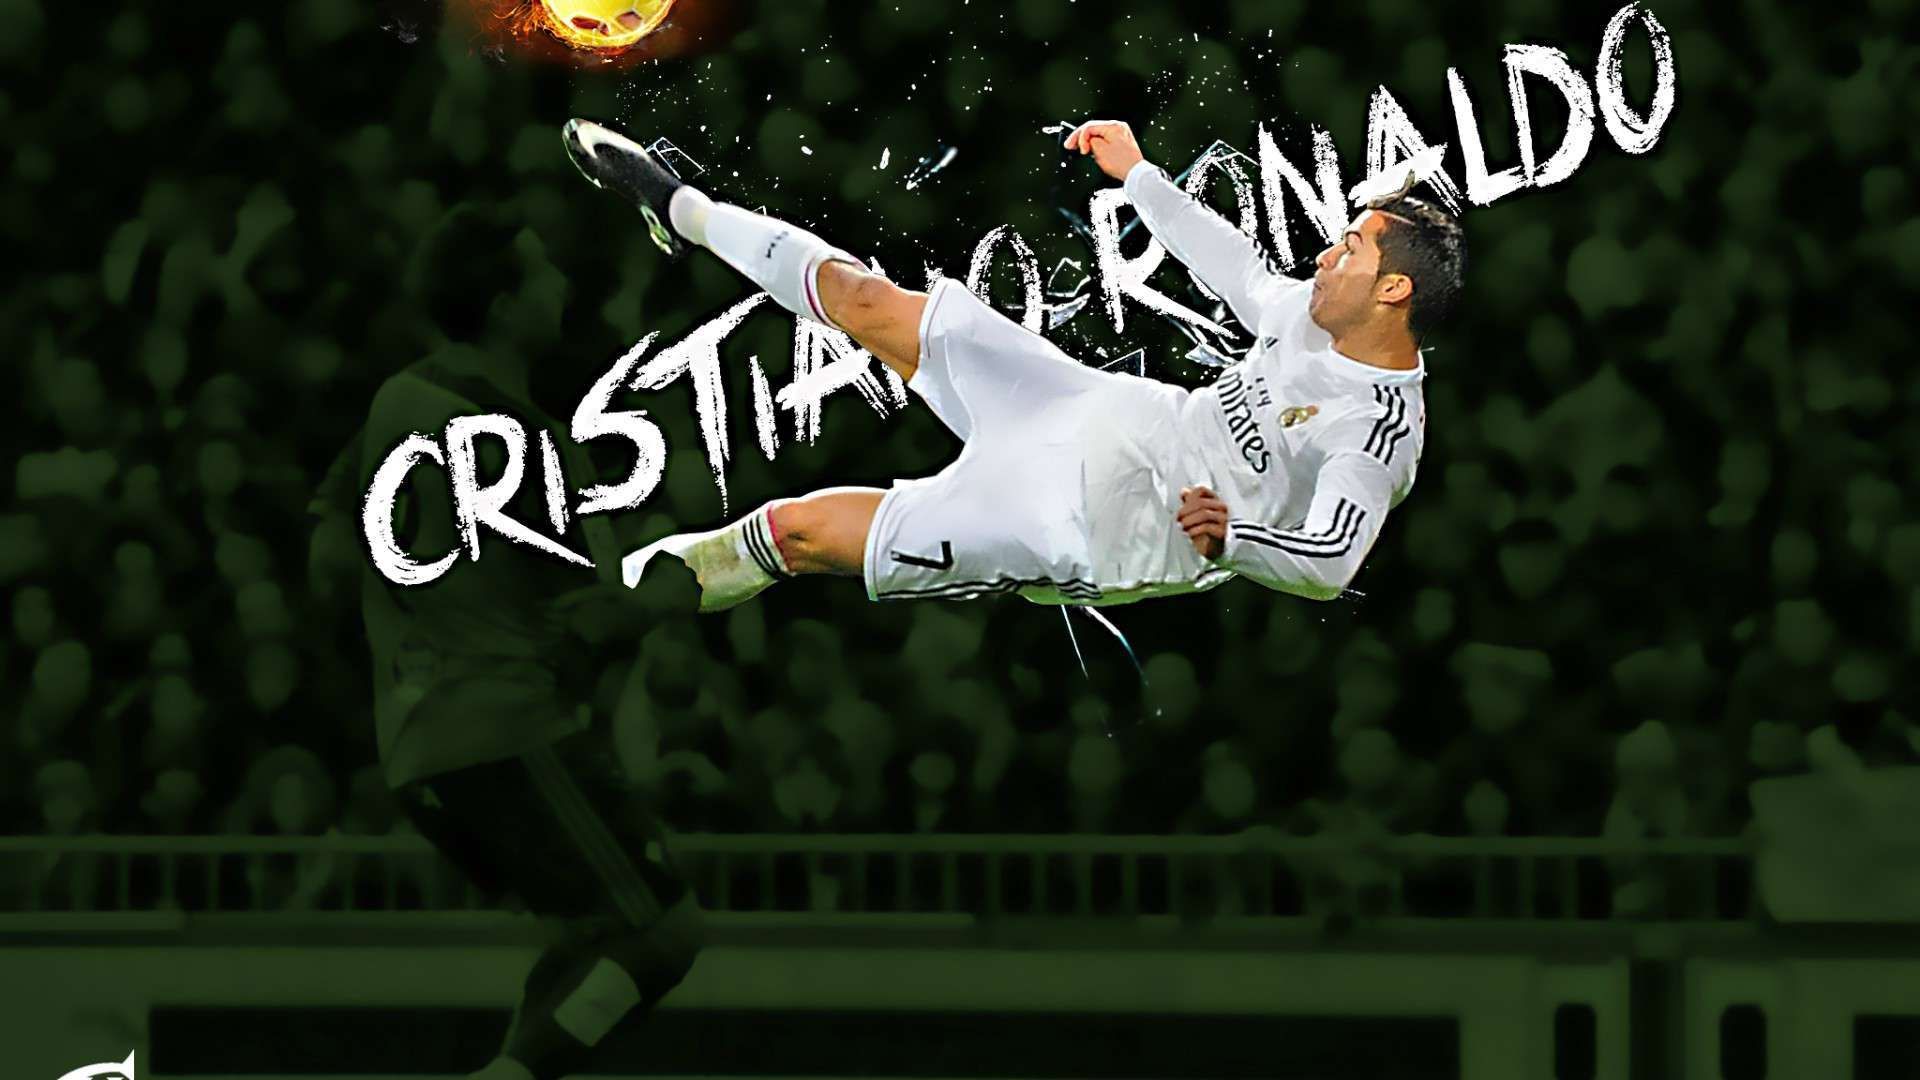 Cristiano Ronaldo Hd Wallpaper For Pc - 1920x1080 Wallpaper 